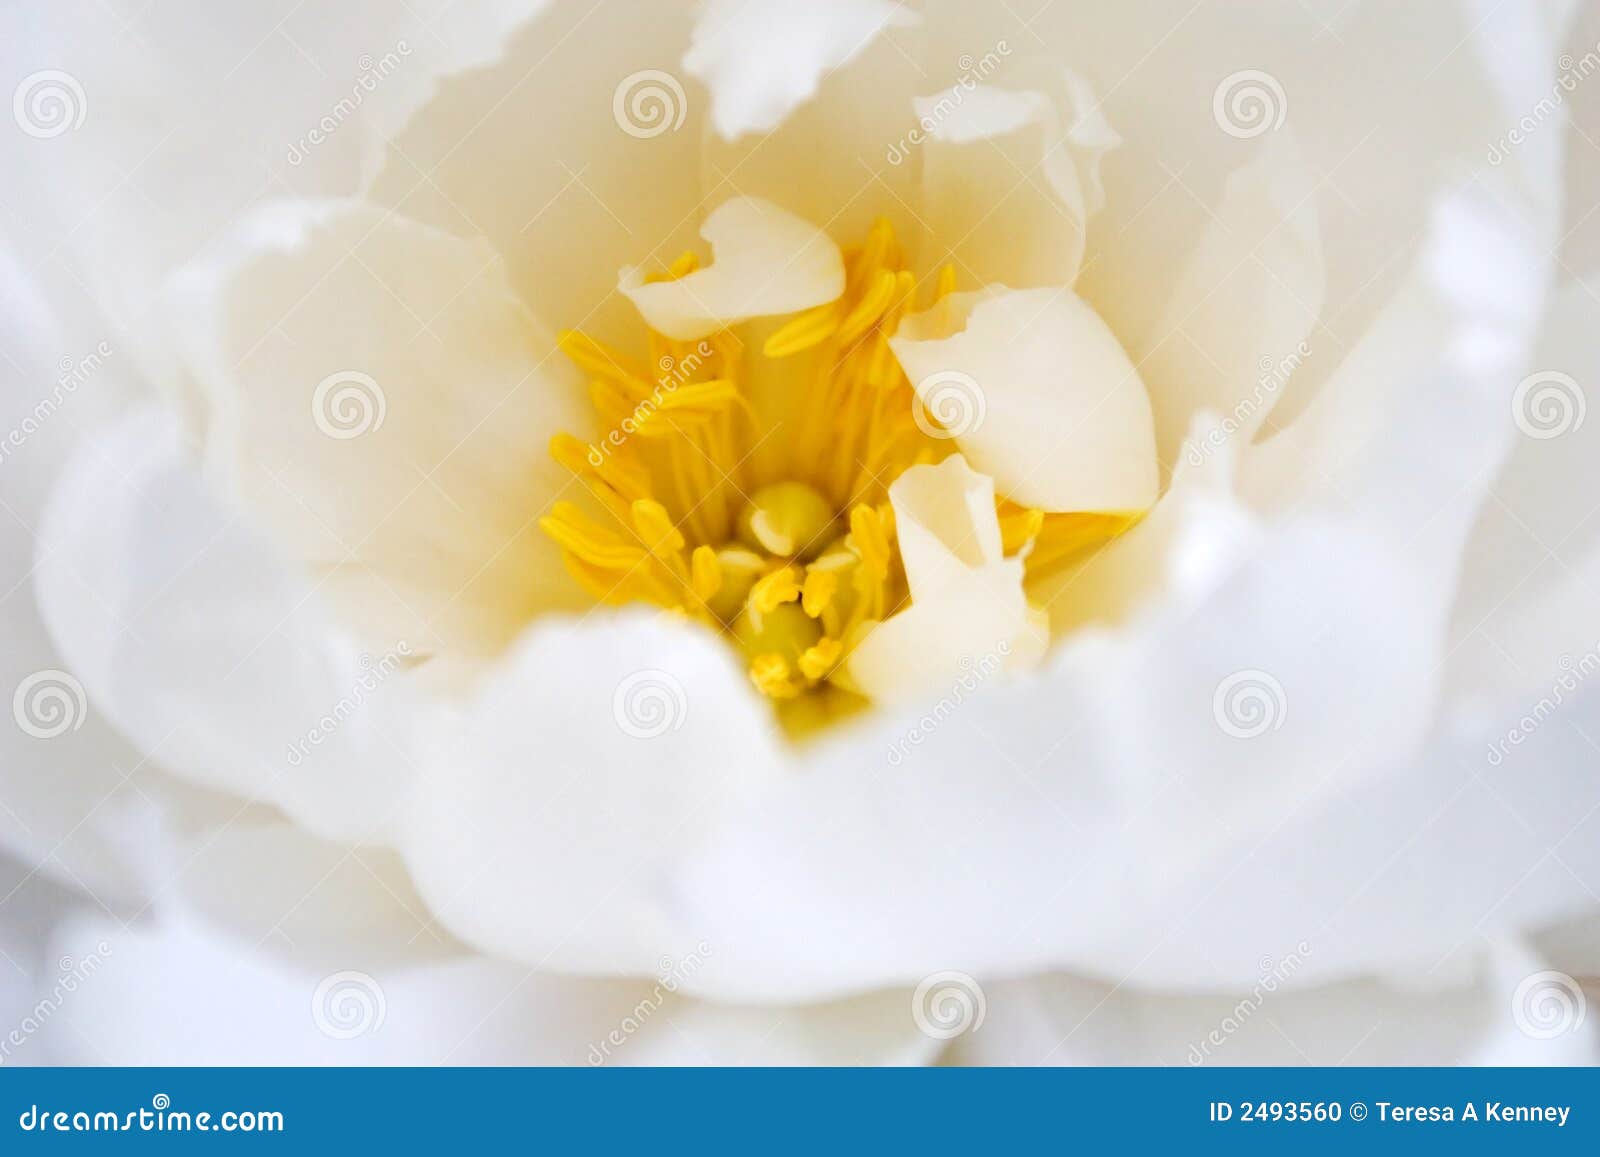 delicate white flower bloom